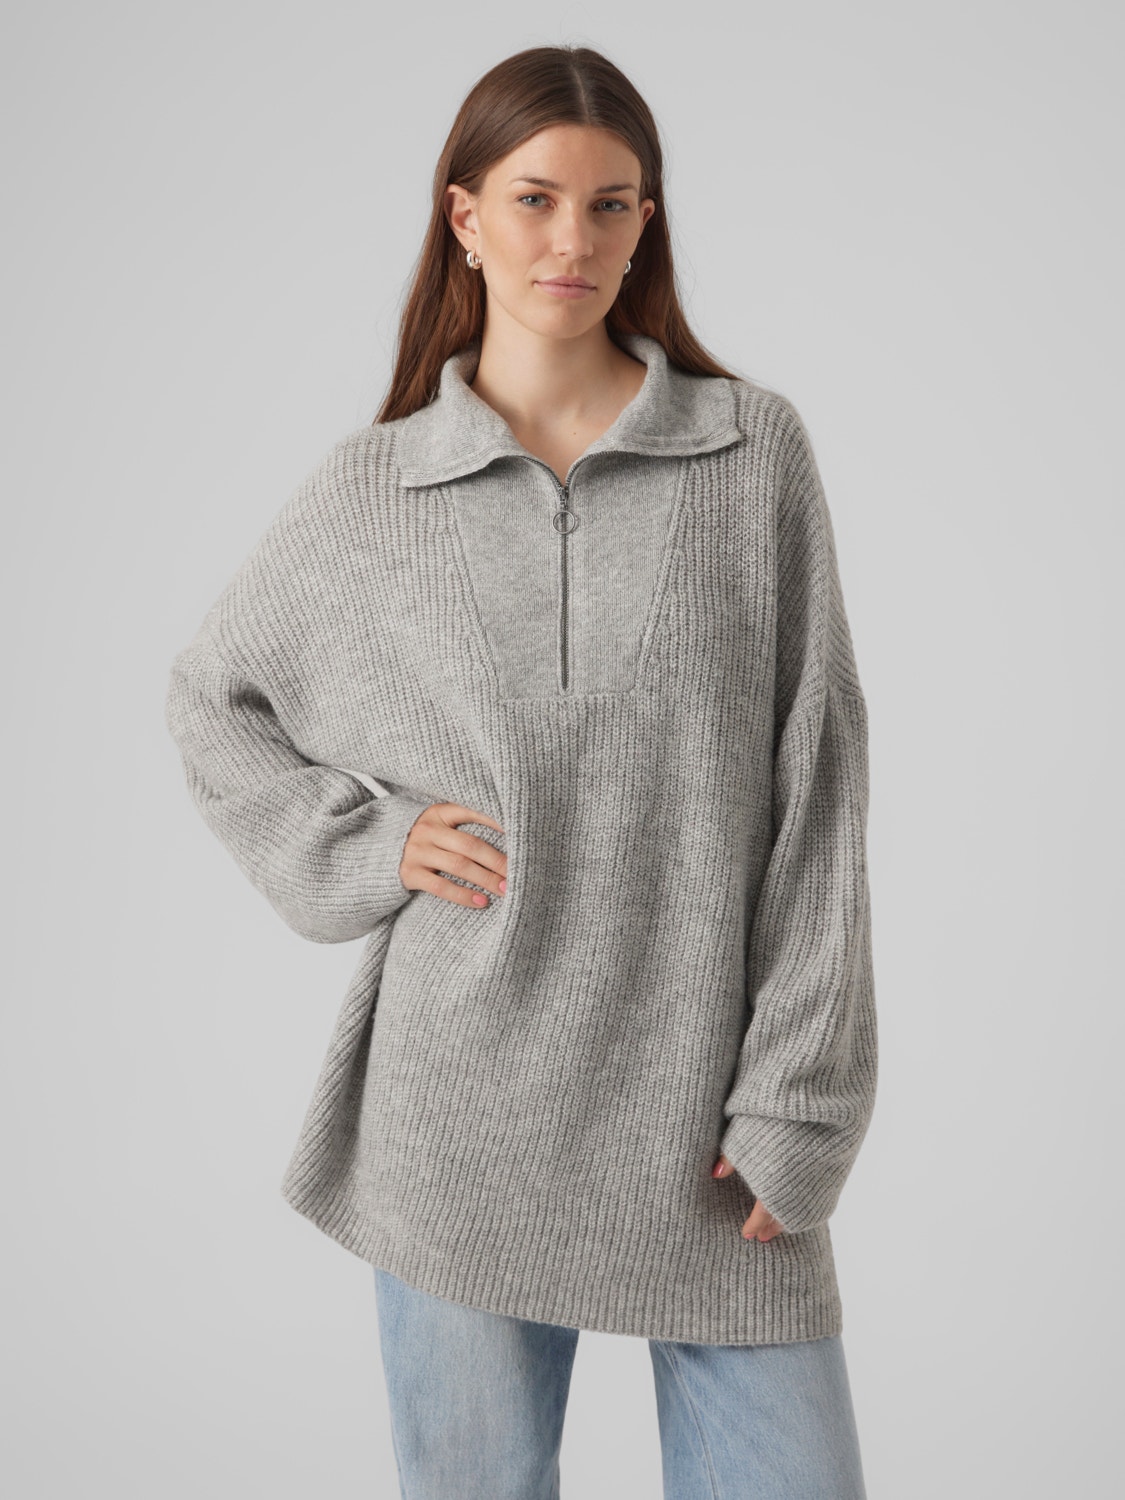 Vero Moda VMPERNILLA Pullover -Light Grey Melange - 10298383